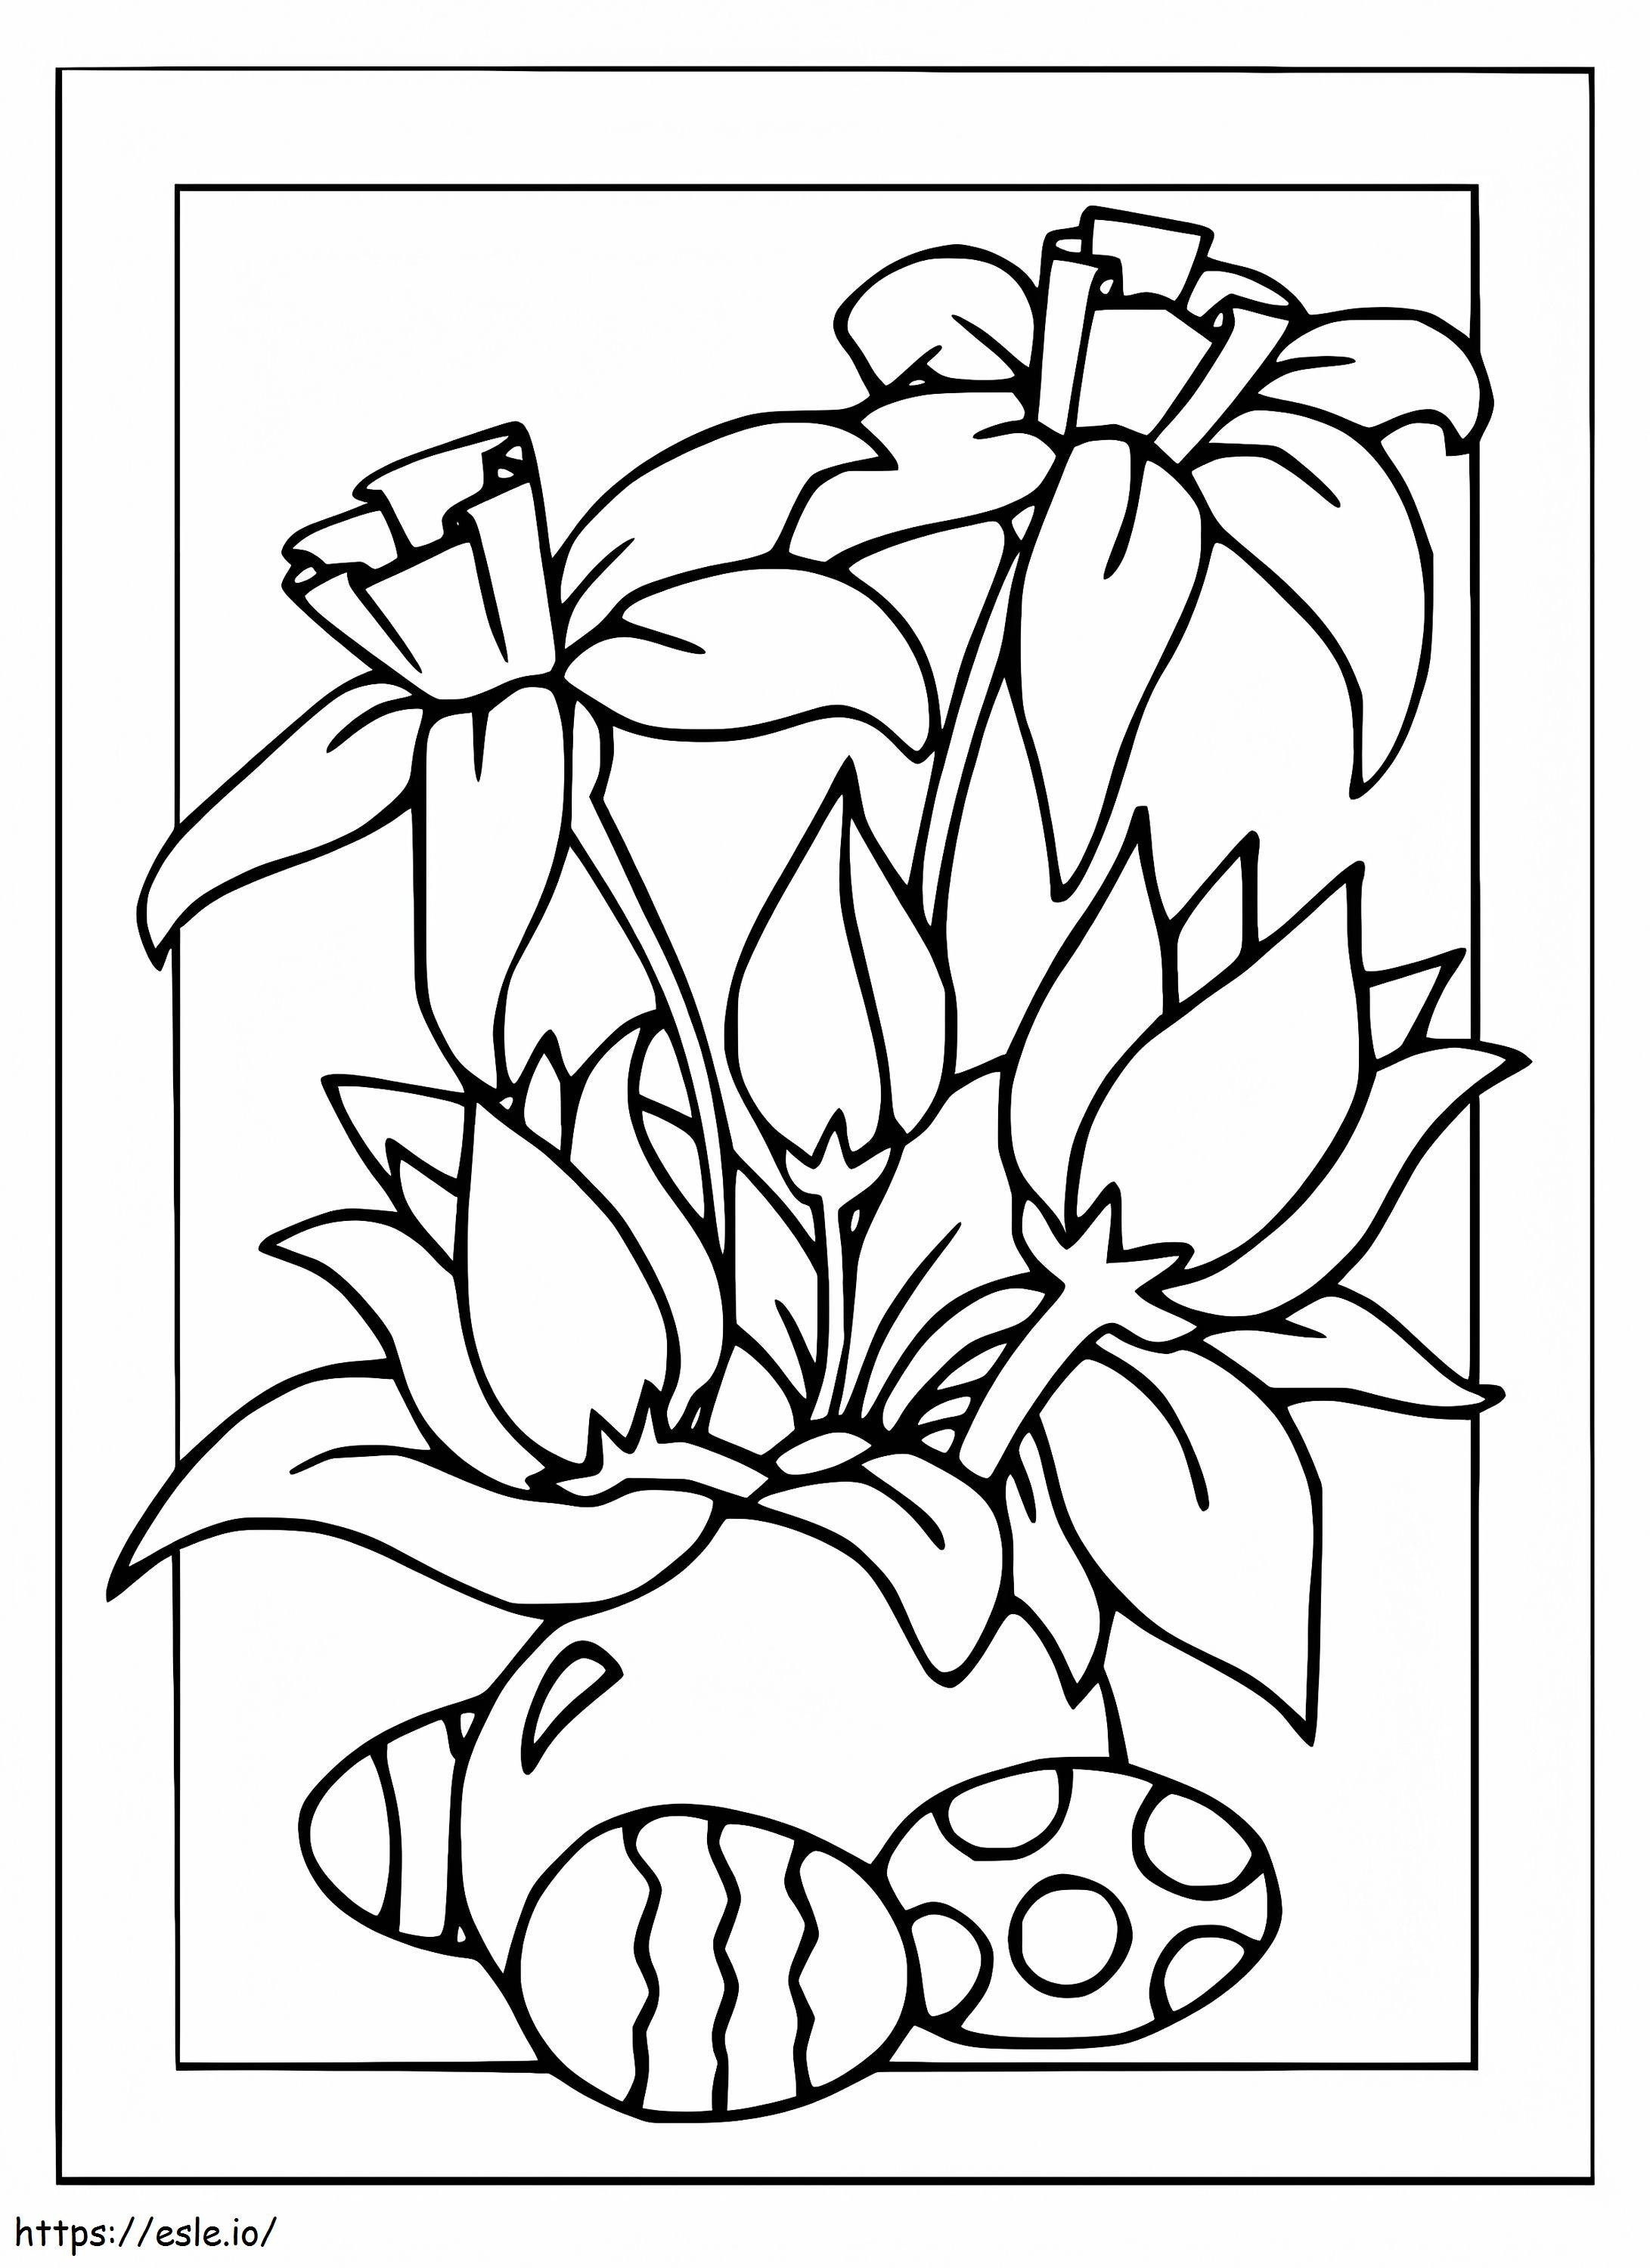 Cartão de Ovos de Páscoa e Flores para colorir